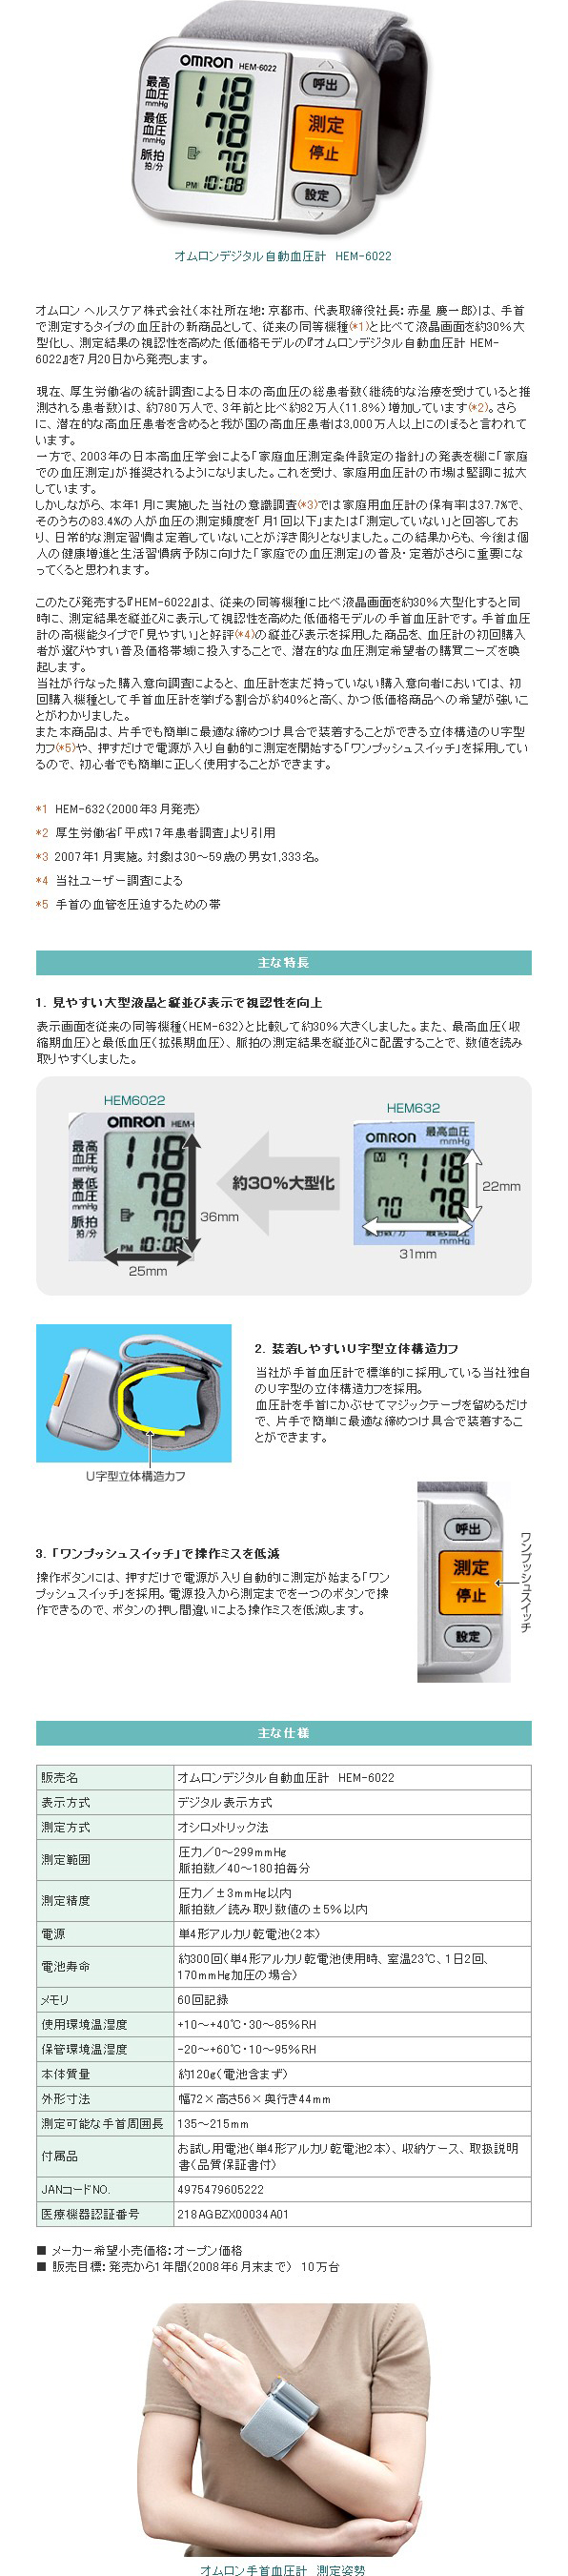 測定結果の視認性を高めた低価格モデルの手首式血圧計。｜ニュースリリース｜オムロン ヘルスケア